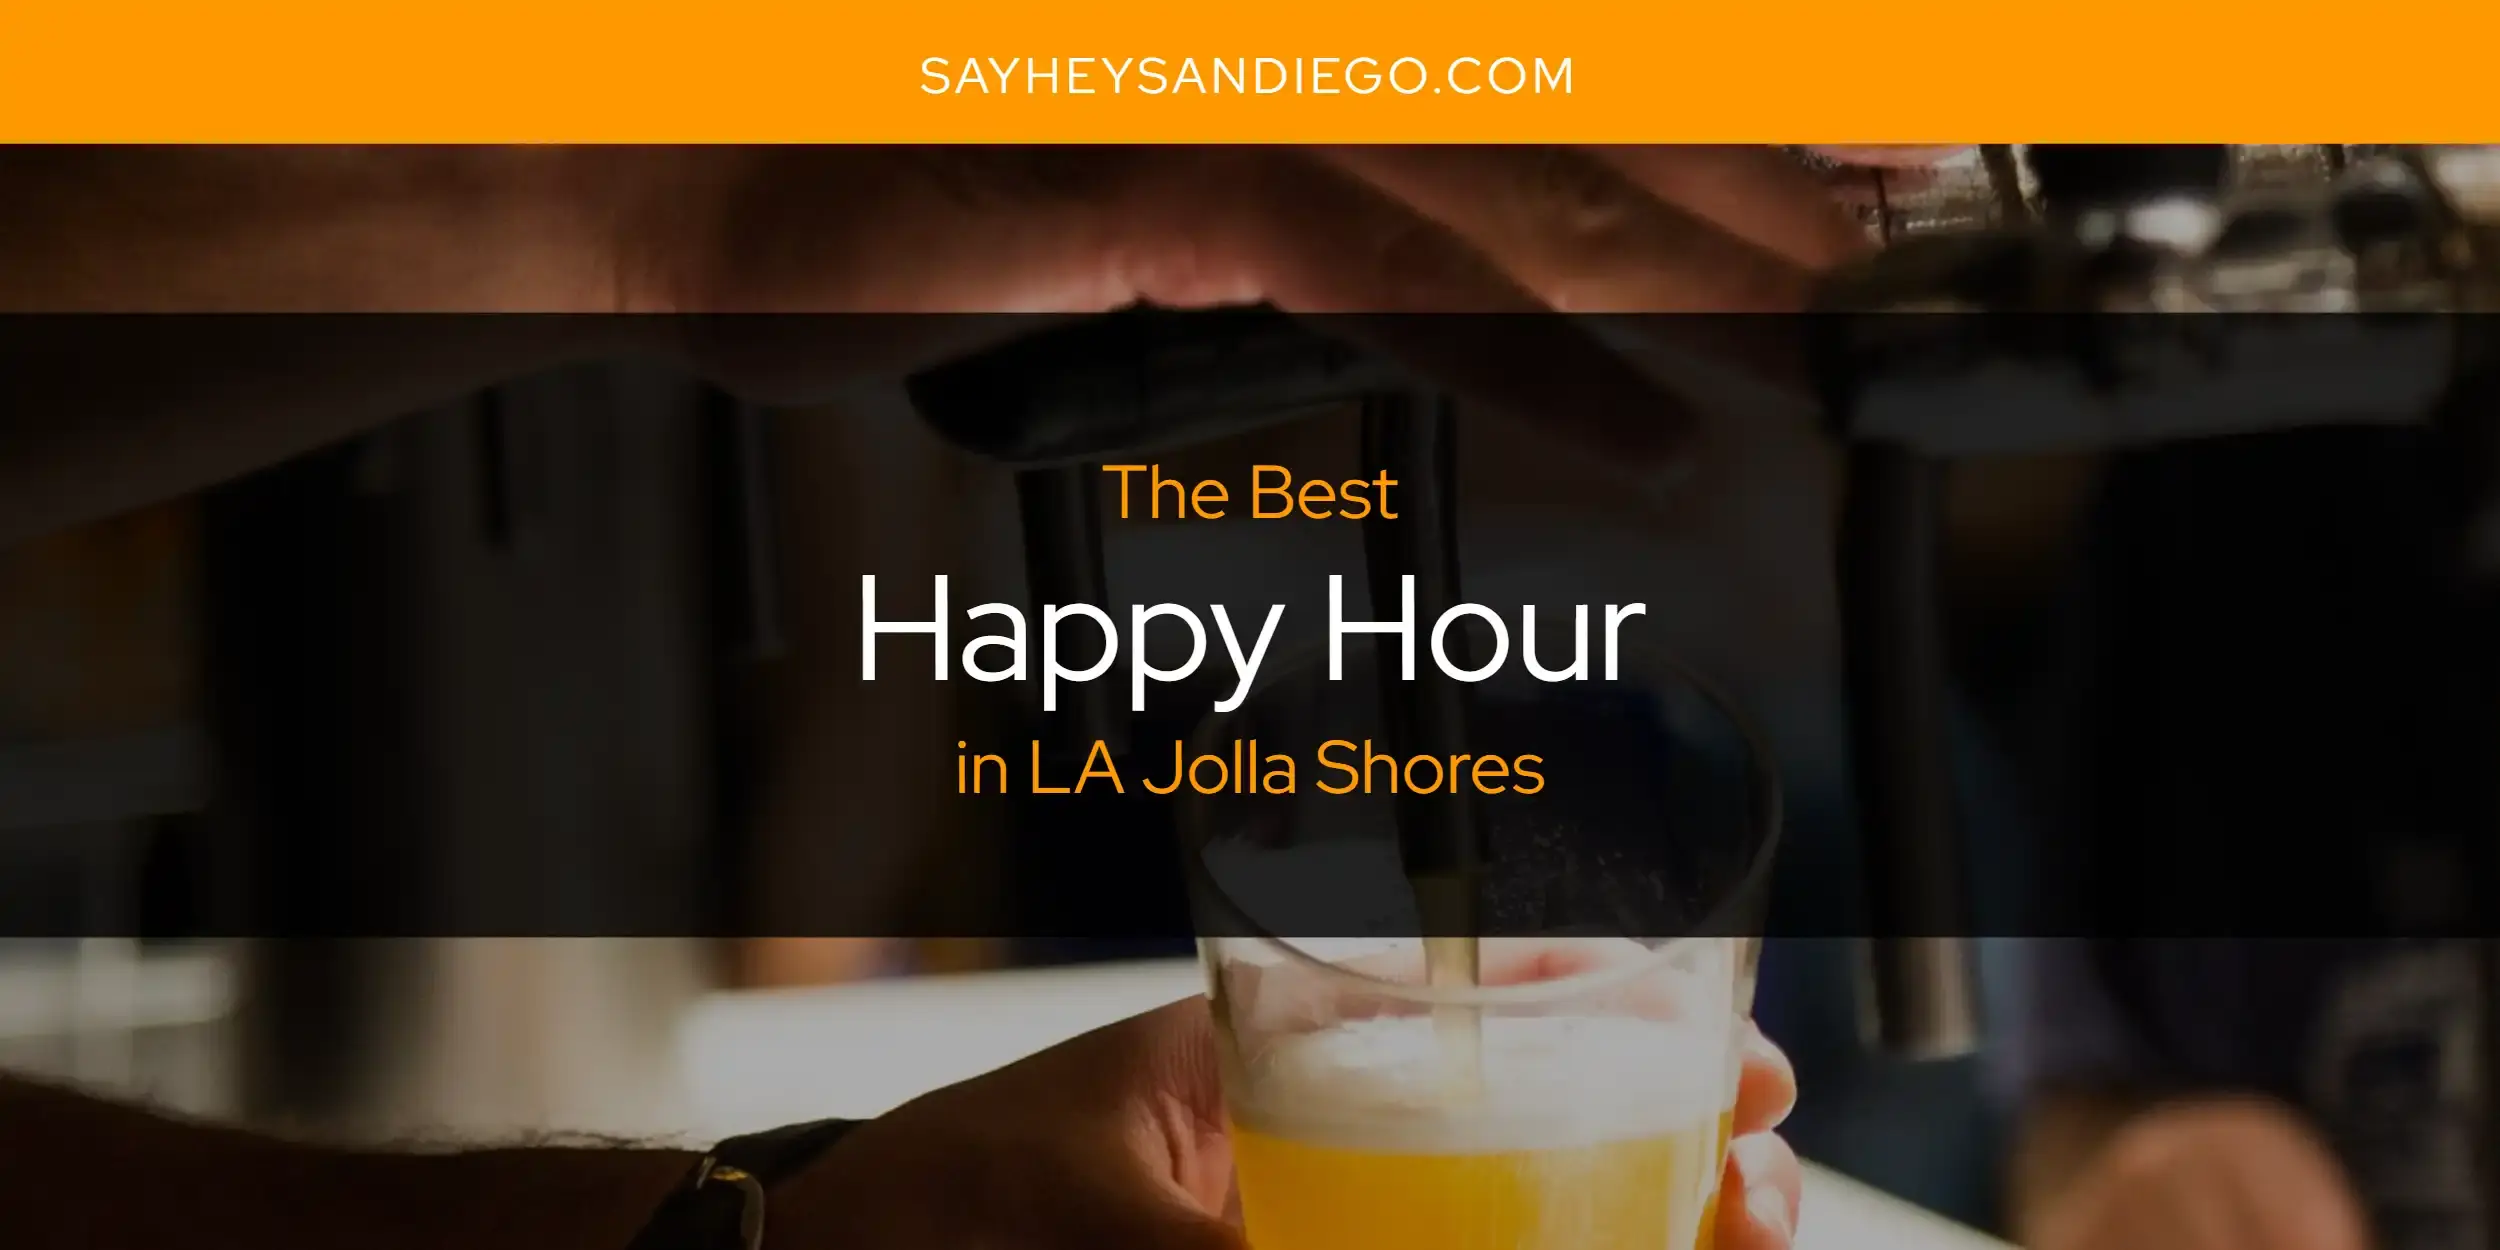 Best Happy Hour in LA Jolla Shores? Here's the Top 13